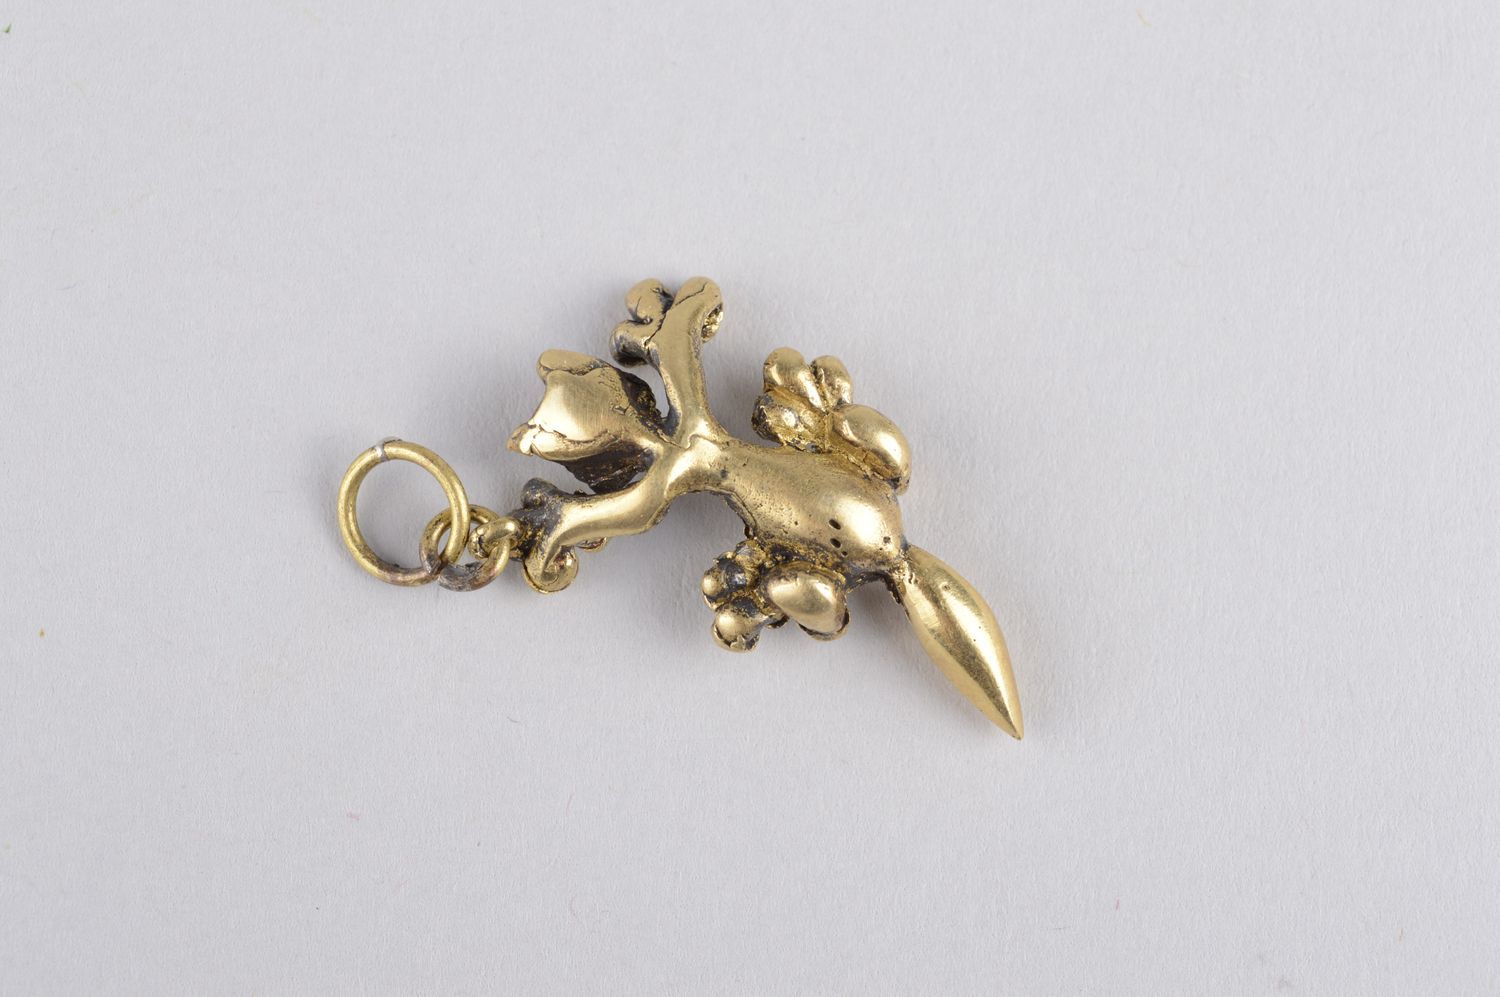 Handmade unusual bronze pendant cute designer accessory elegant pendant photo 2